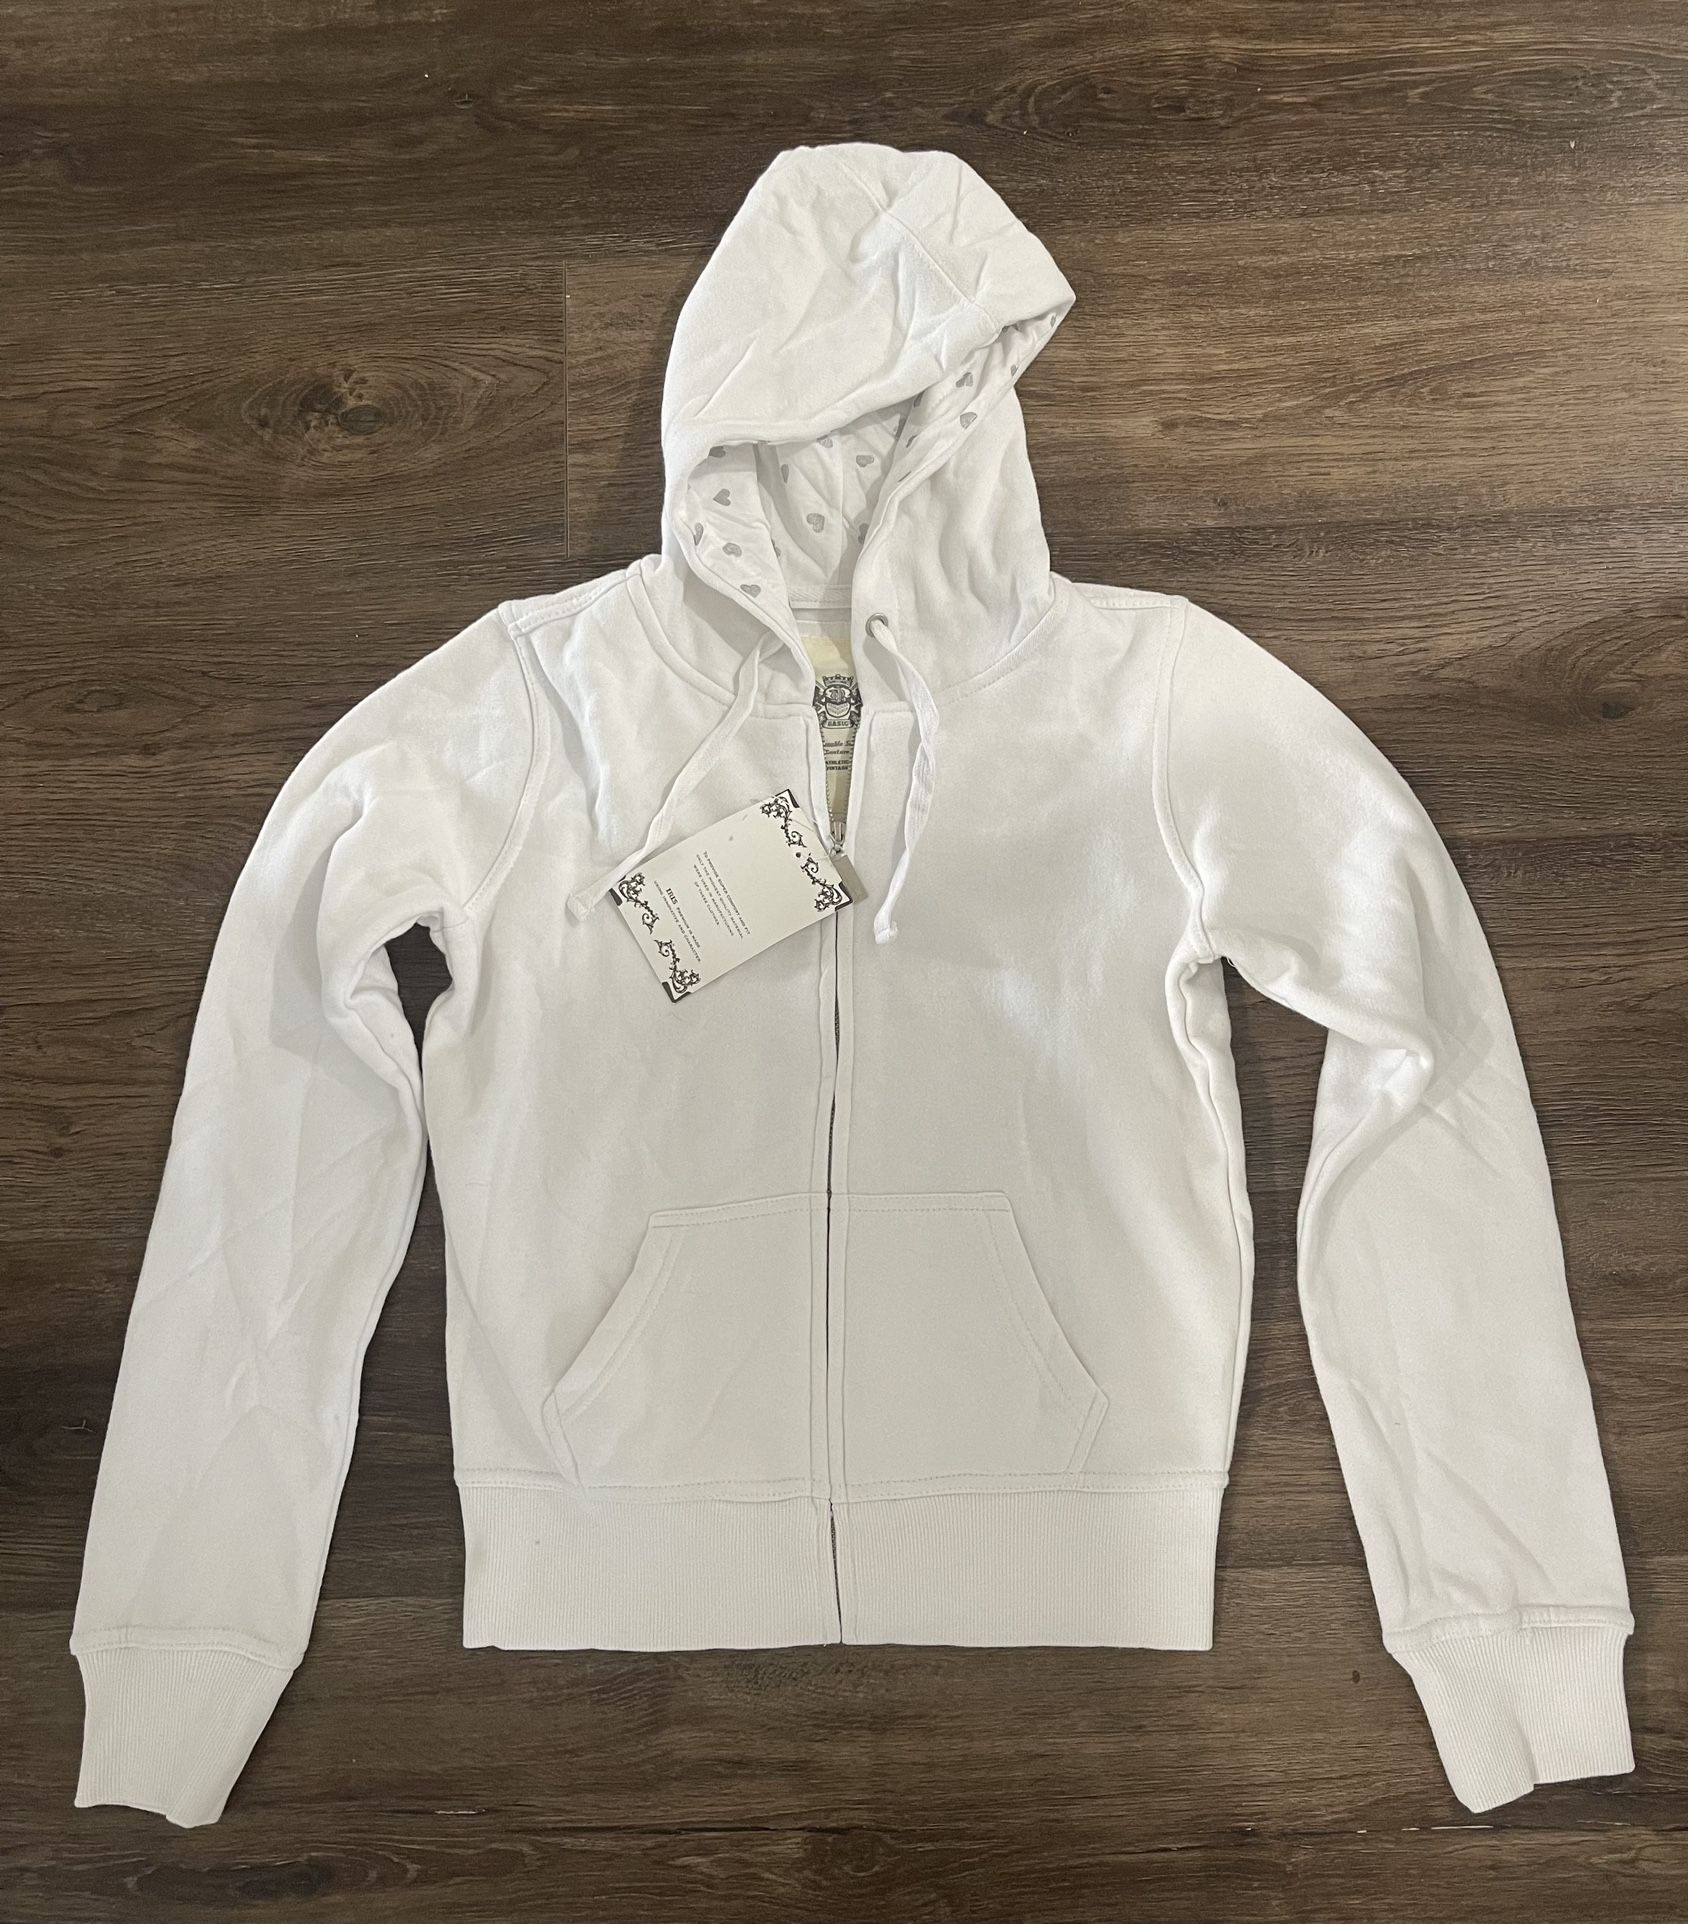 NWT Iris Junior Girls White Zip Up Hooded Jacket Medium 